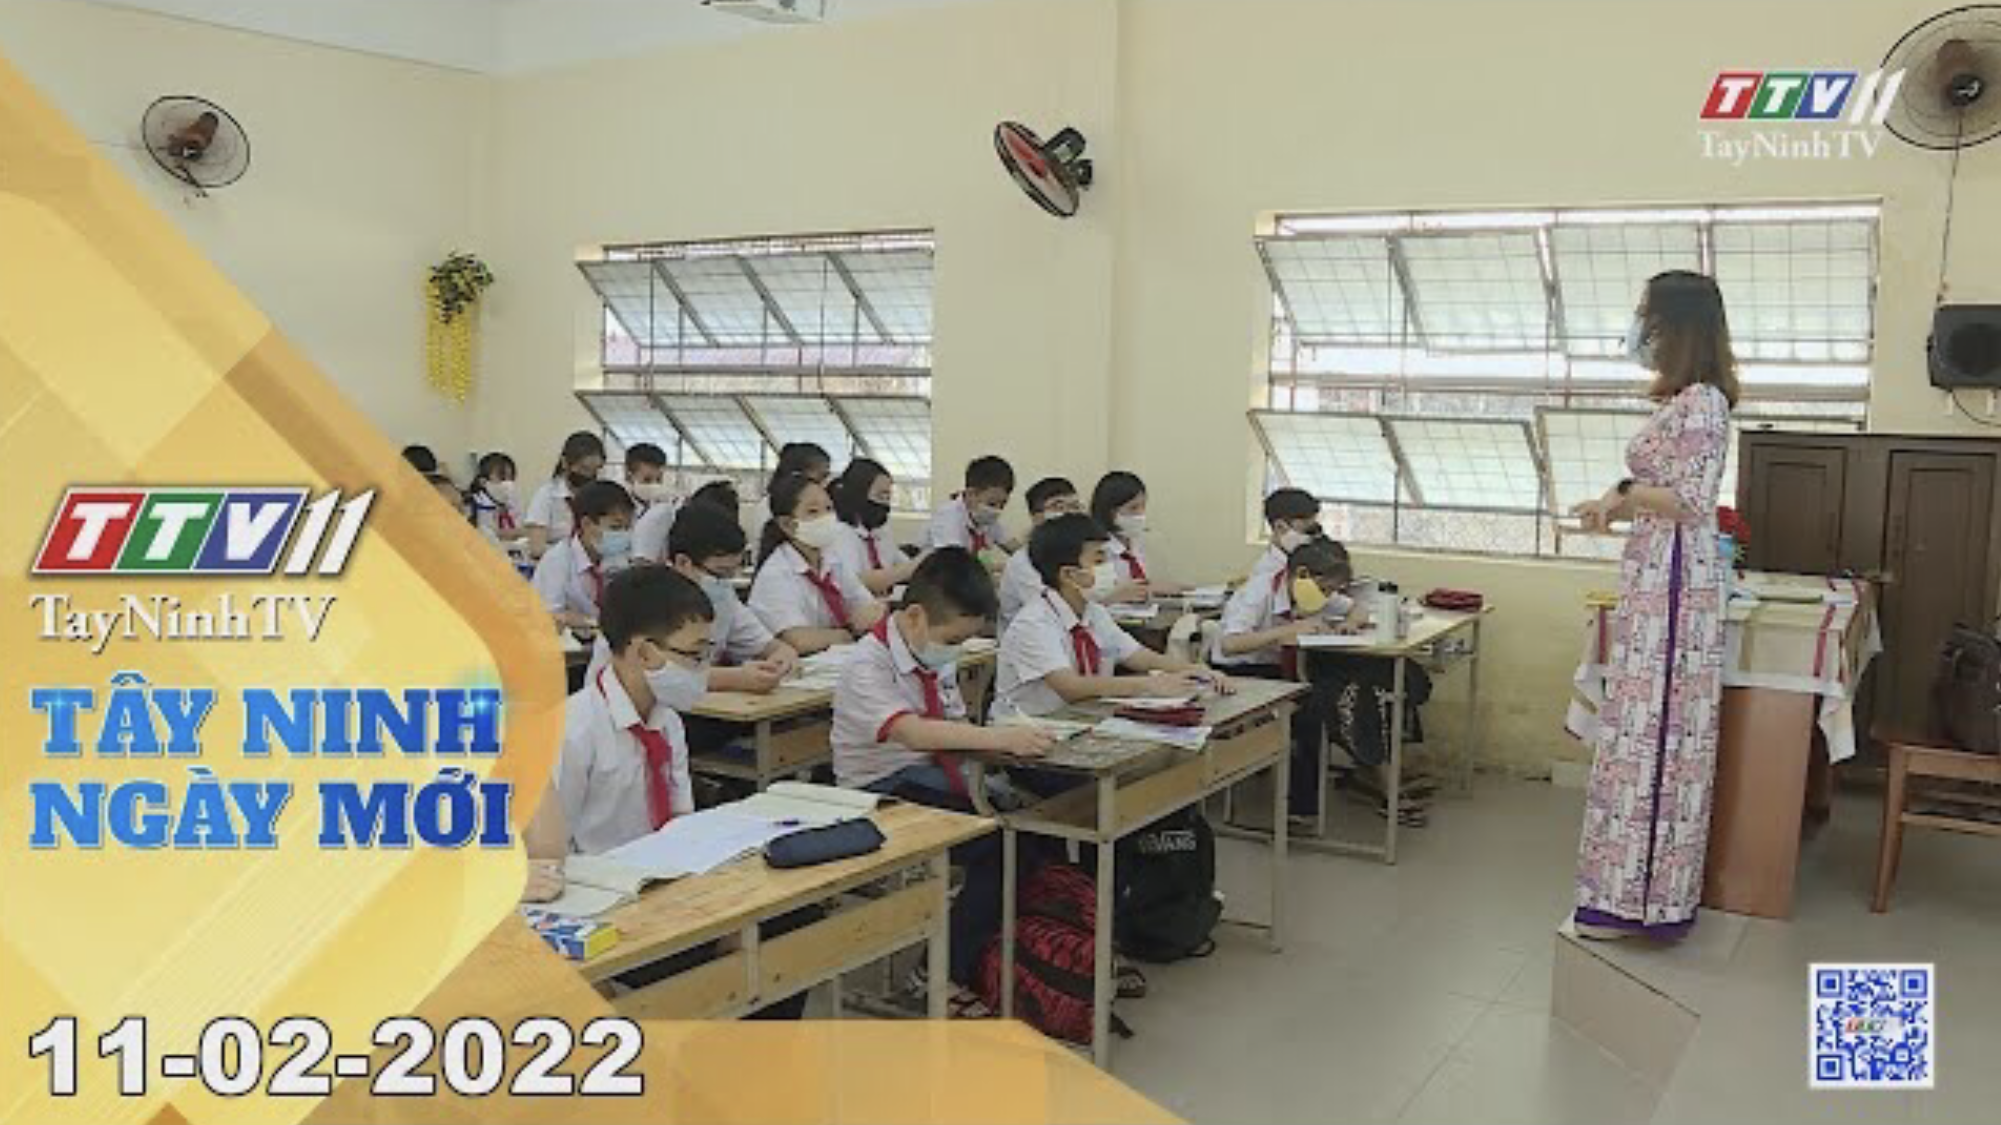 Tây Ninh ngày mới 11-02-2022 | Tin tức hôm nay | TayNinhTV